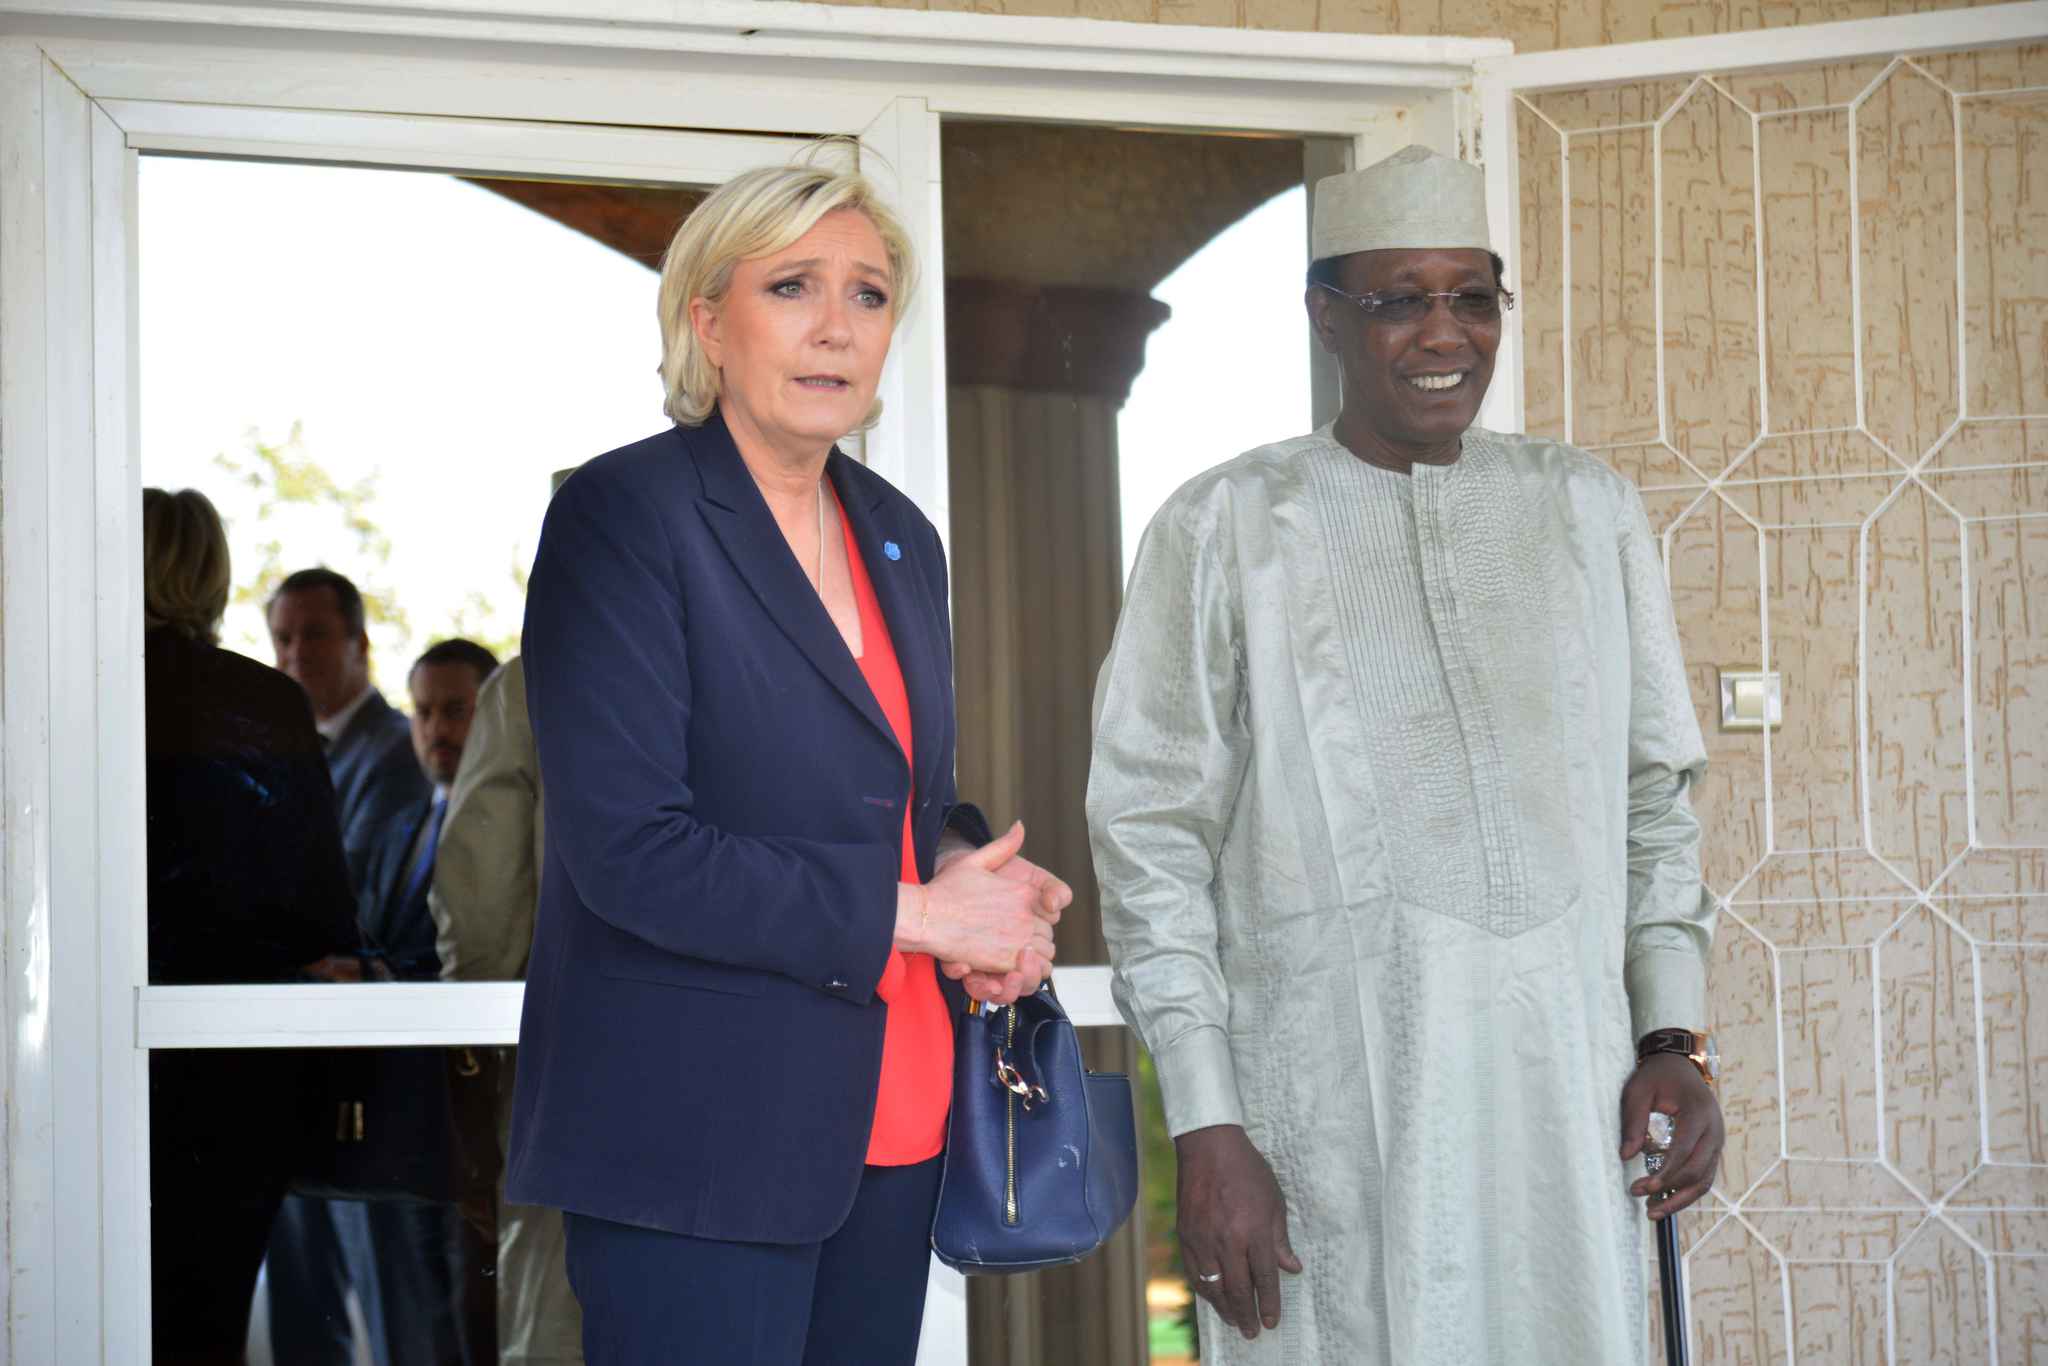 La candidate du Front national (FN) à l’élection présidentielle française a  rencontré dernièrement le président du Tchad Idriss Déby Itno lors d’une visite officielle dans le pays.